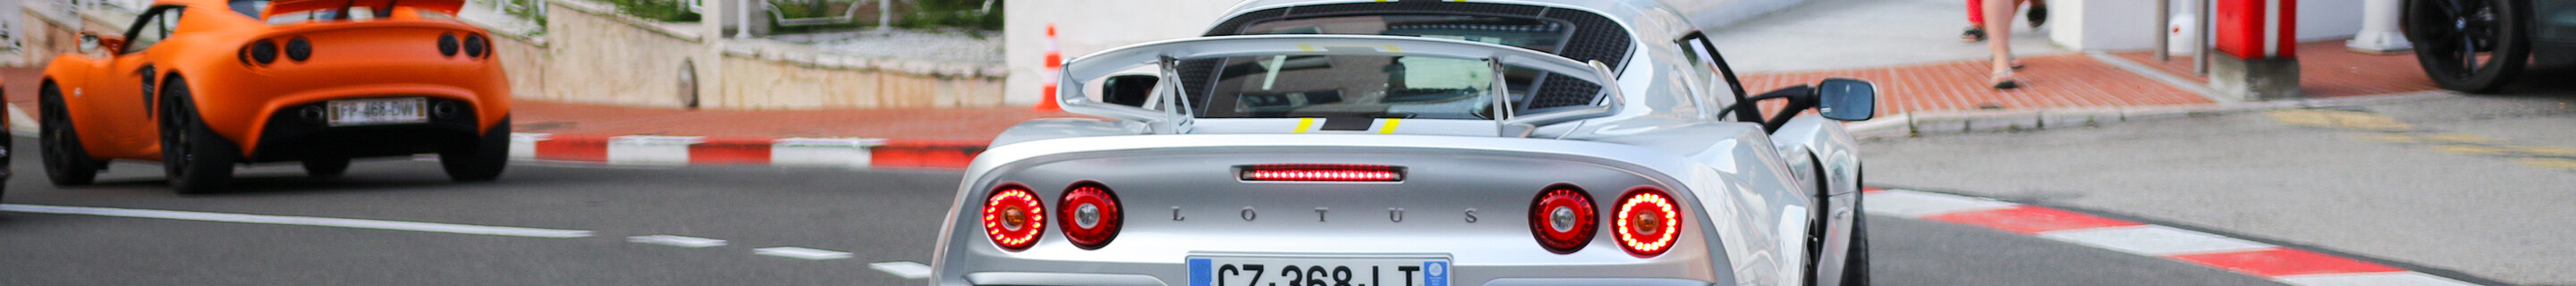 Lotus Exige S 2012